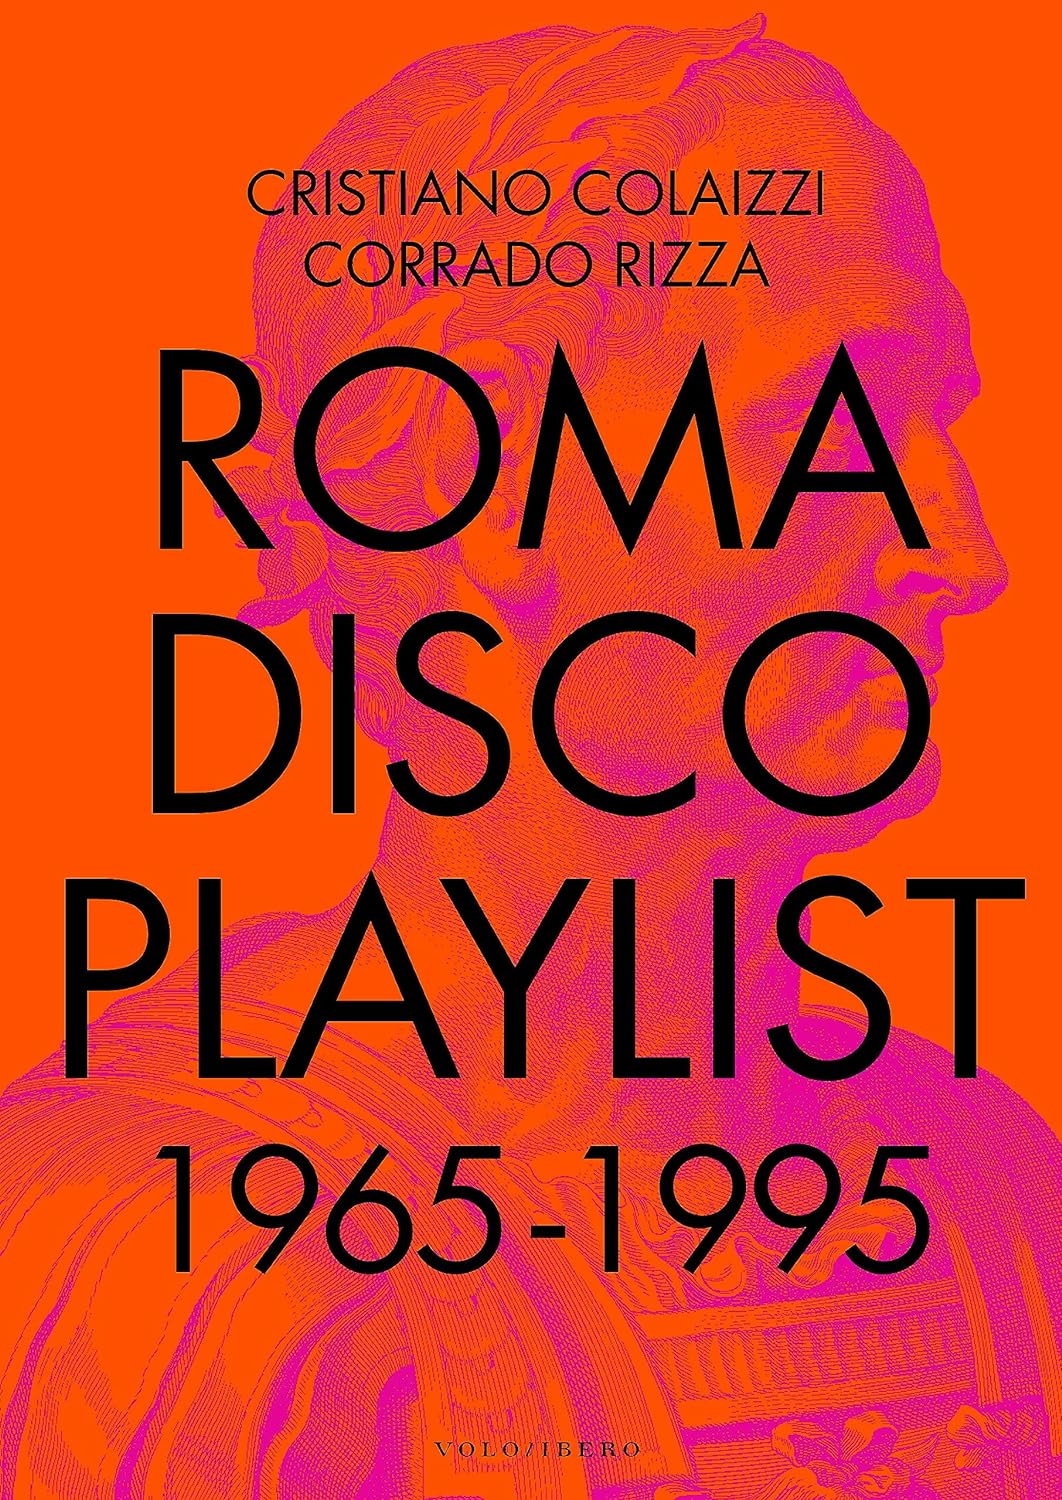 Roma Disco Playlist 1965 – 1995 di Cristiano Colaizzi e Corrado Rizza – Recensione